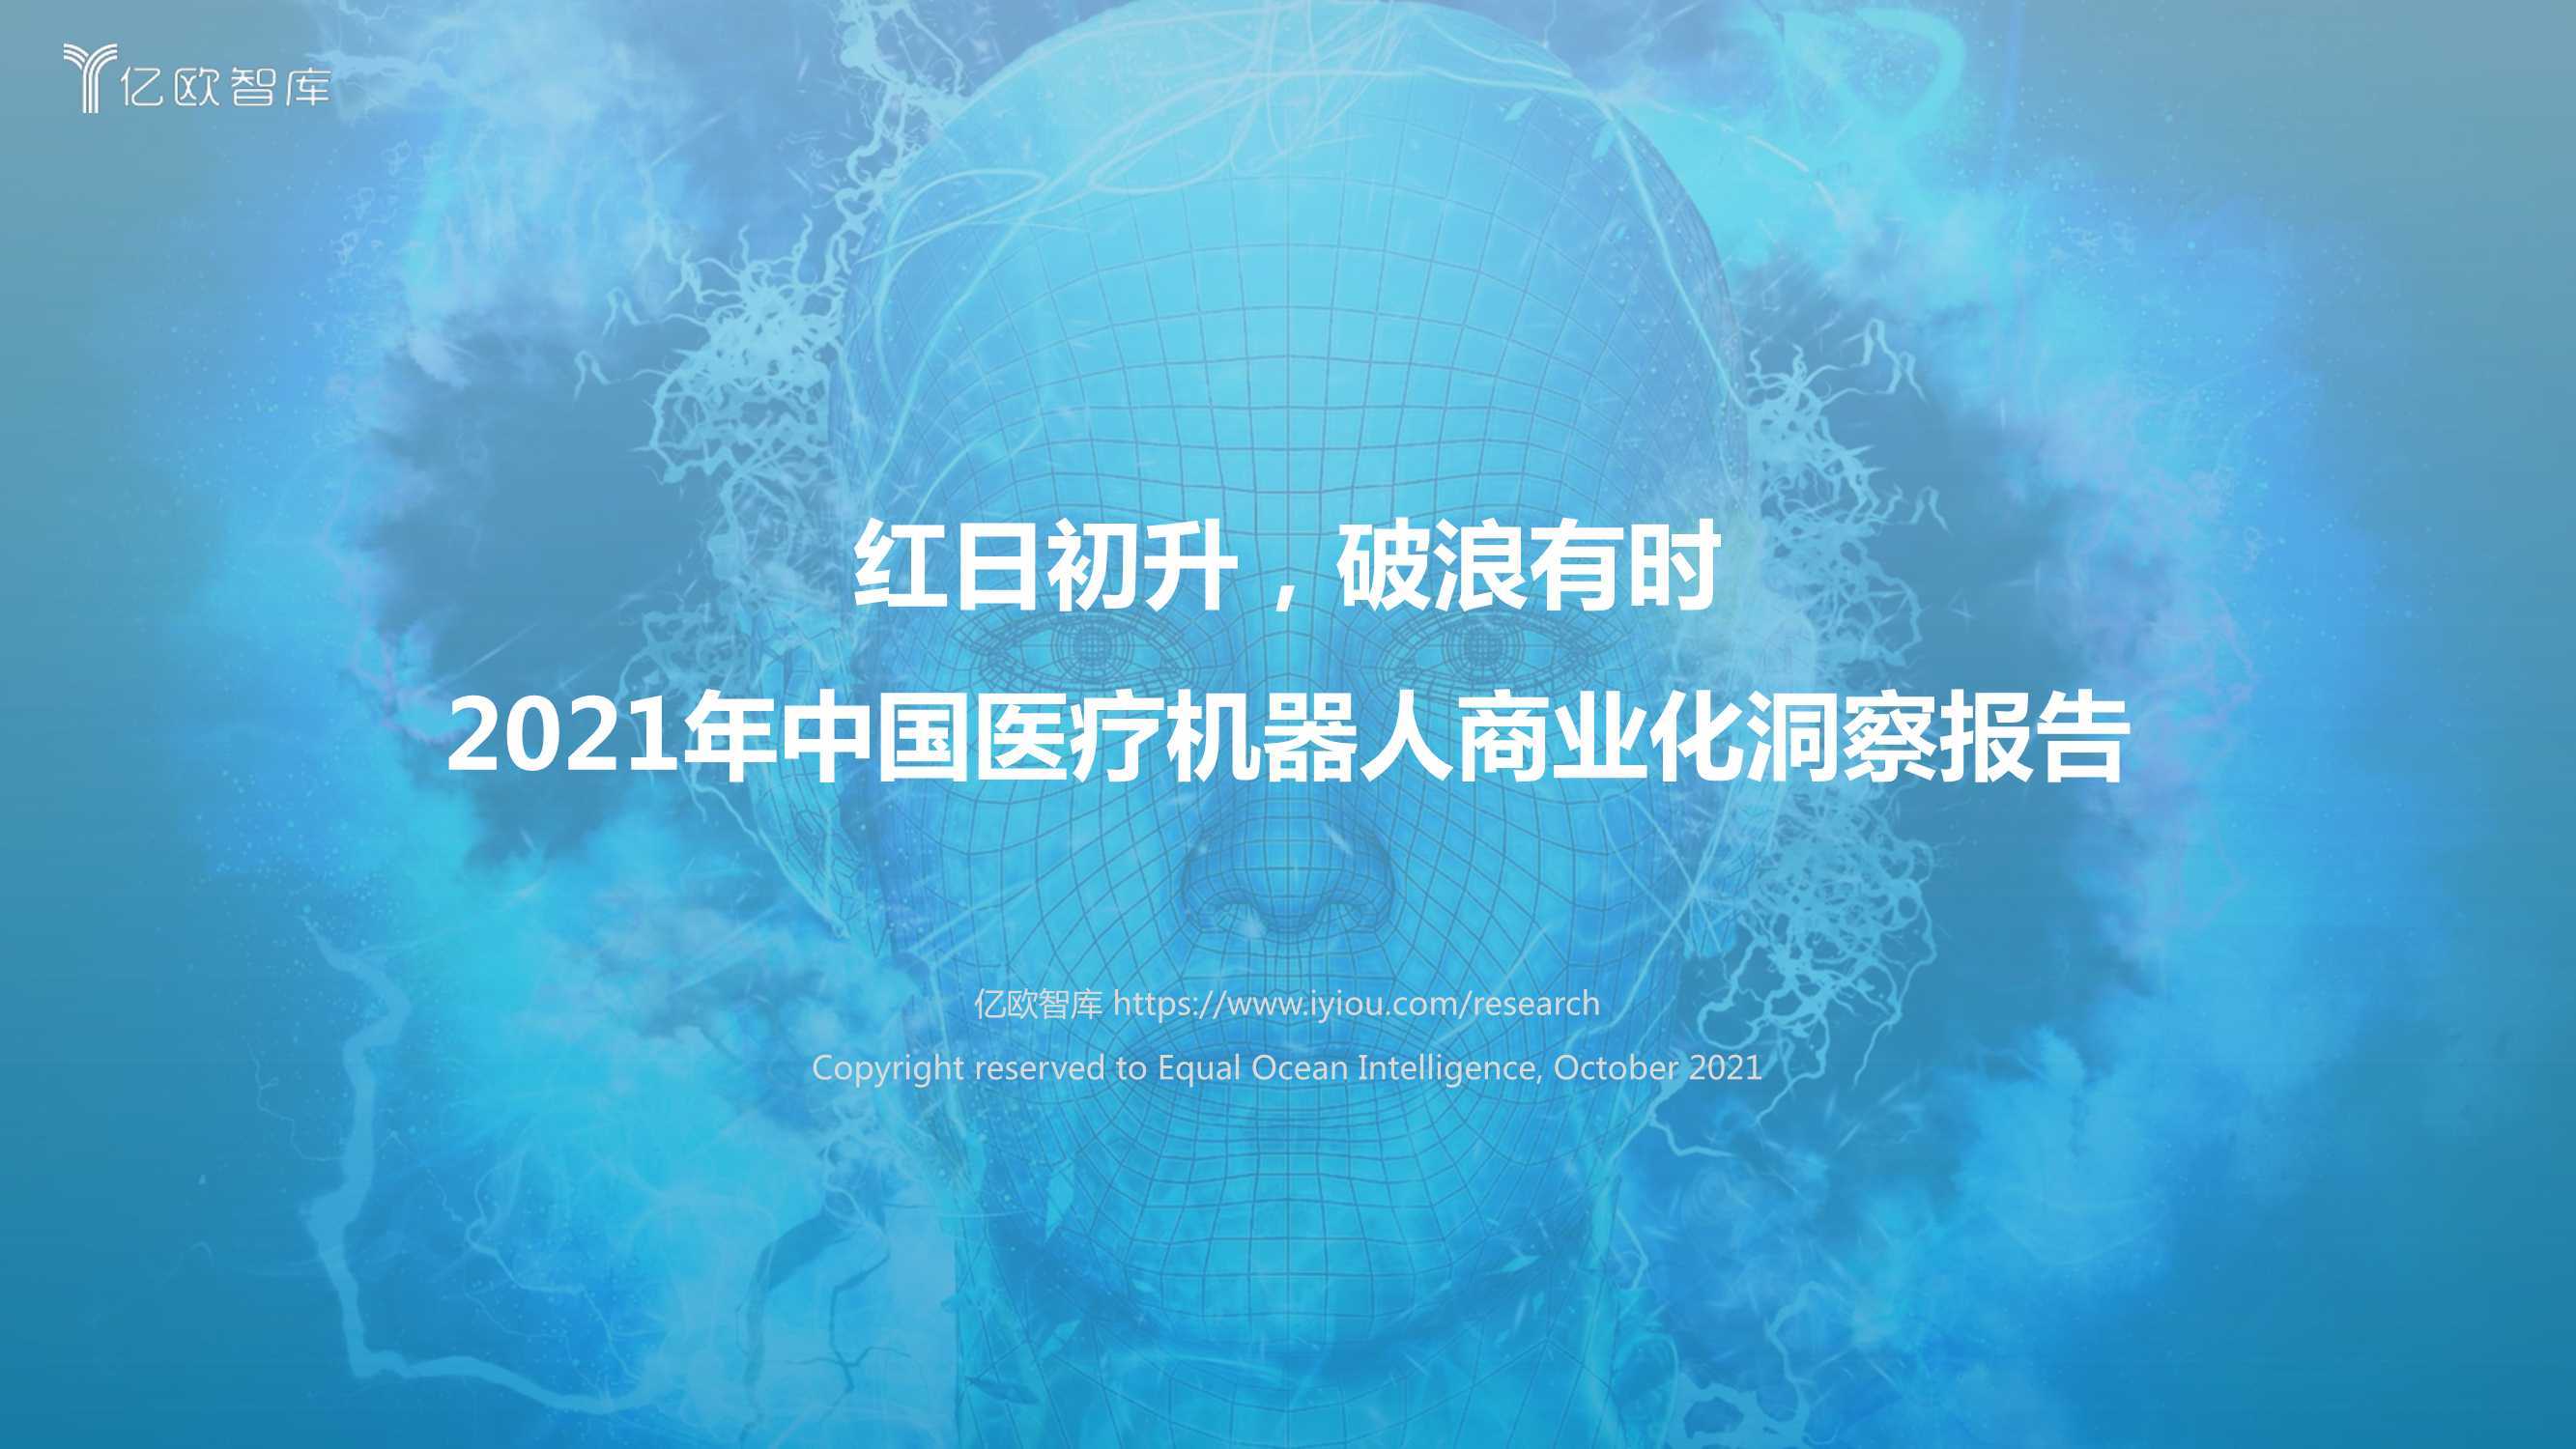 2021年中国医疗机器人商业化洞察报告 